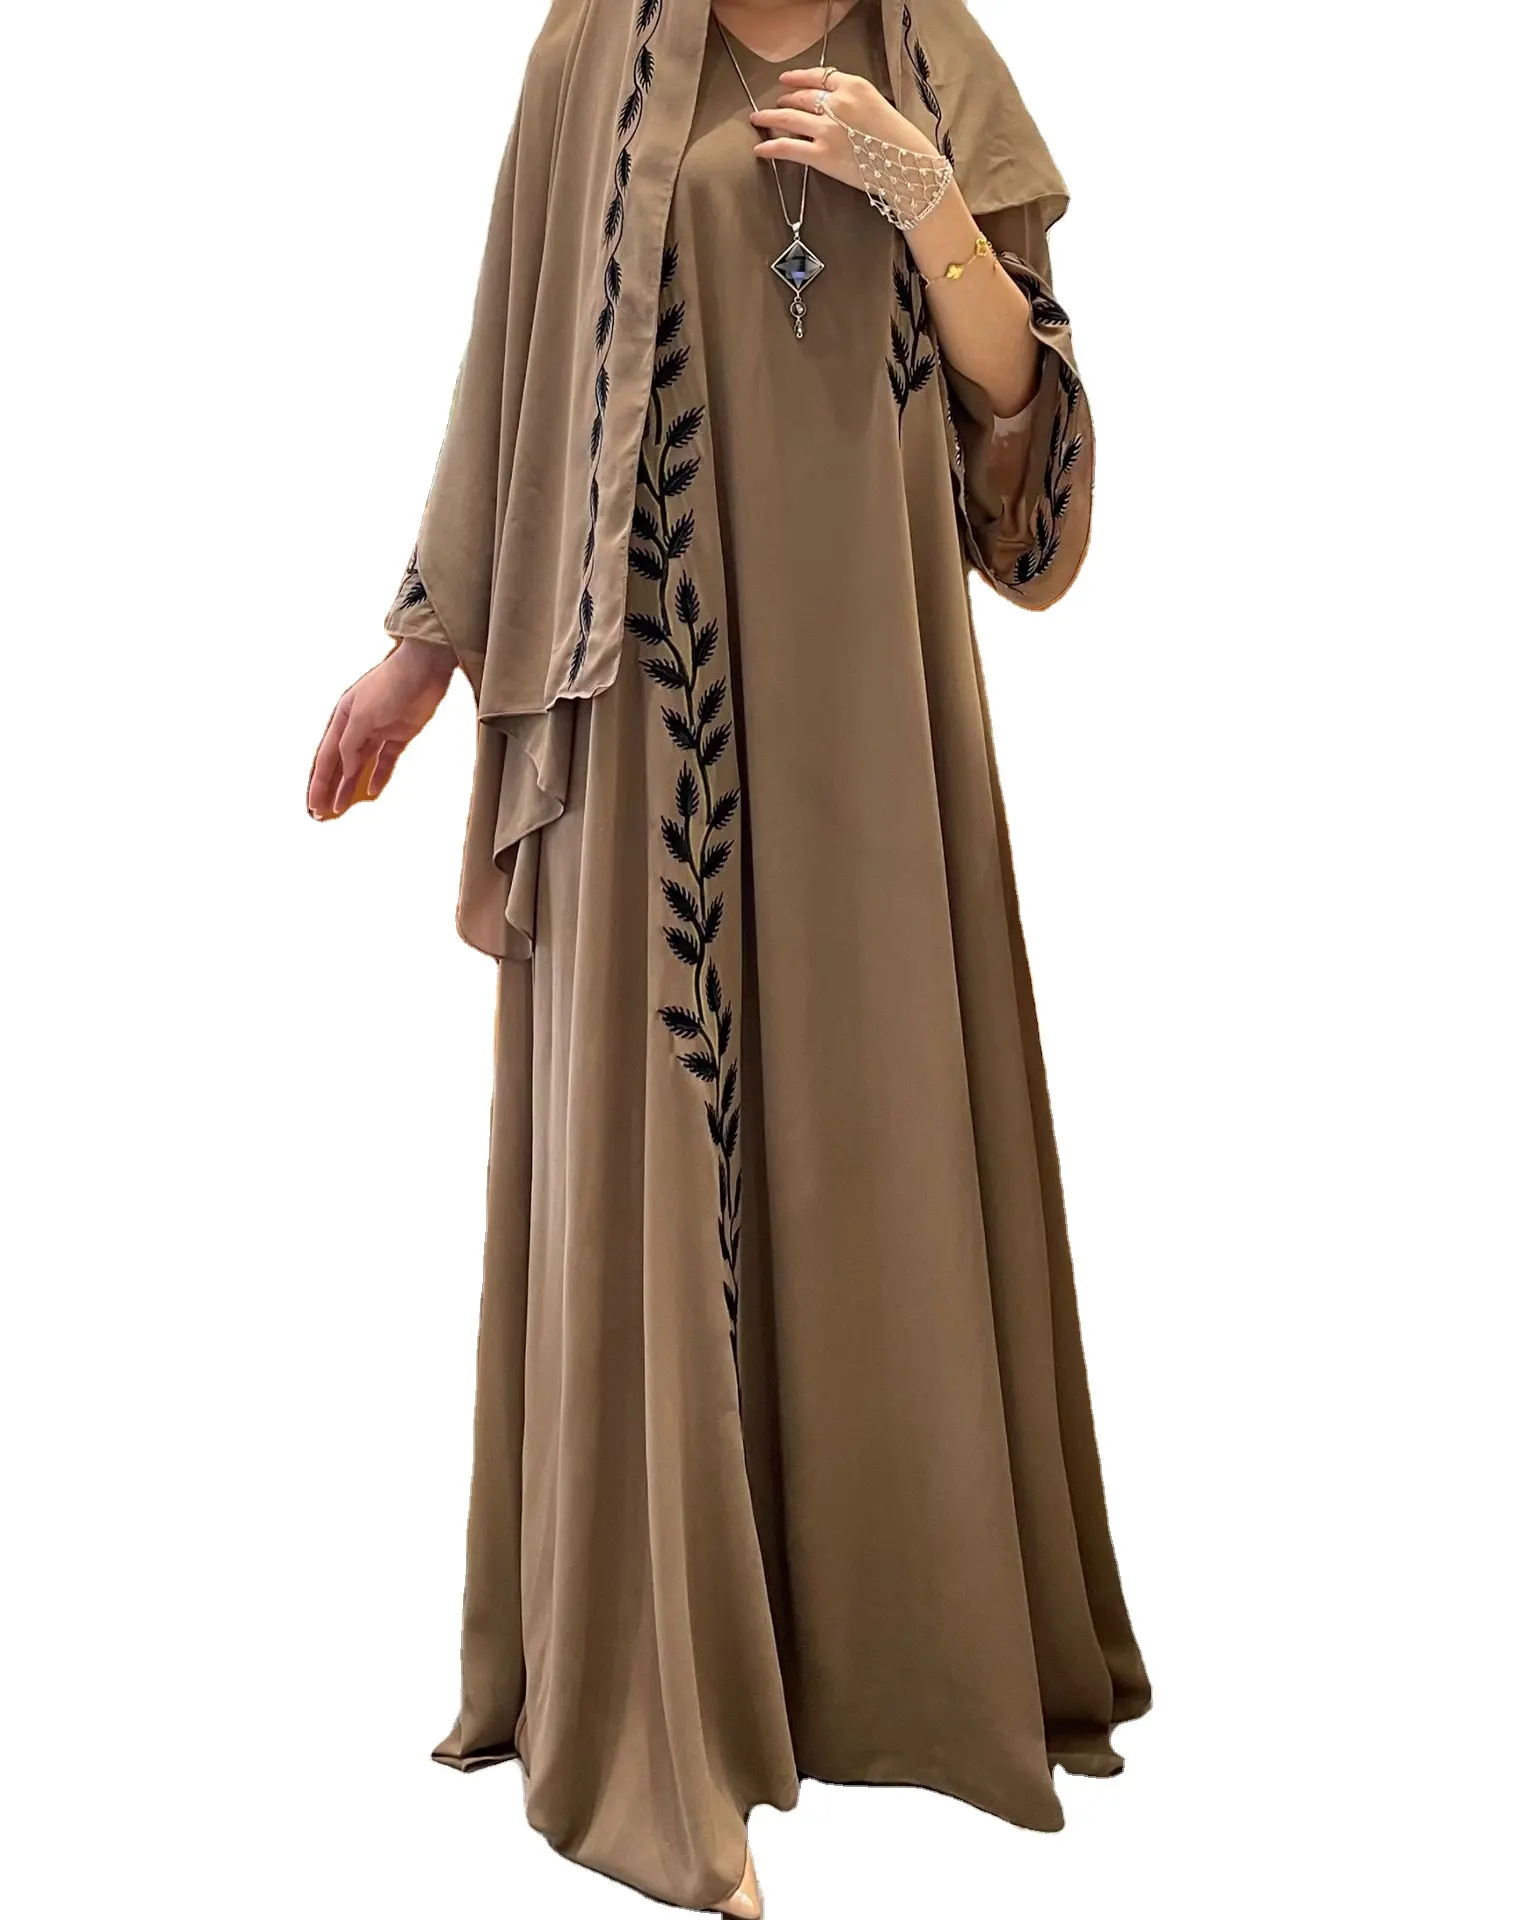 Gaun panjang bordir pola tanaman leher kru sifon mode gaun panjang Dubai Timur Tengah Abaya